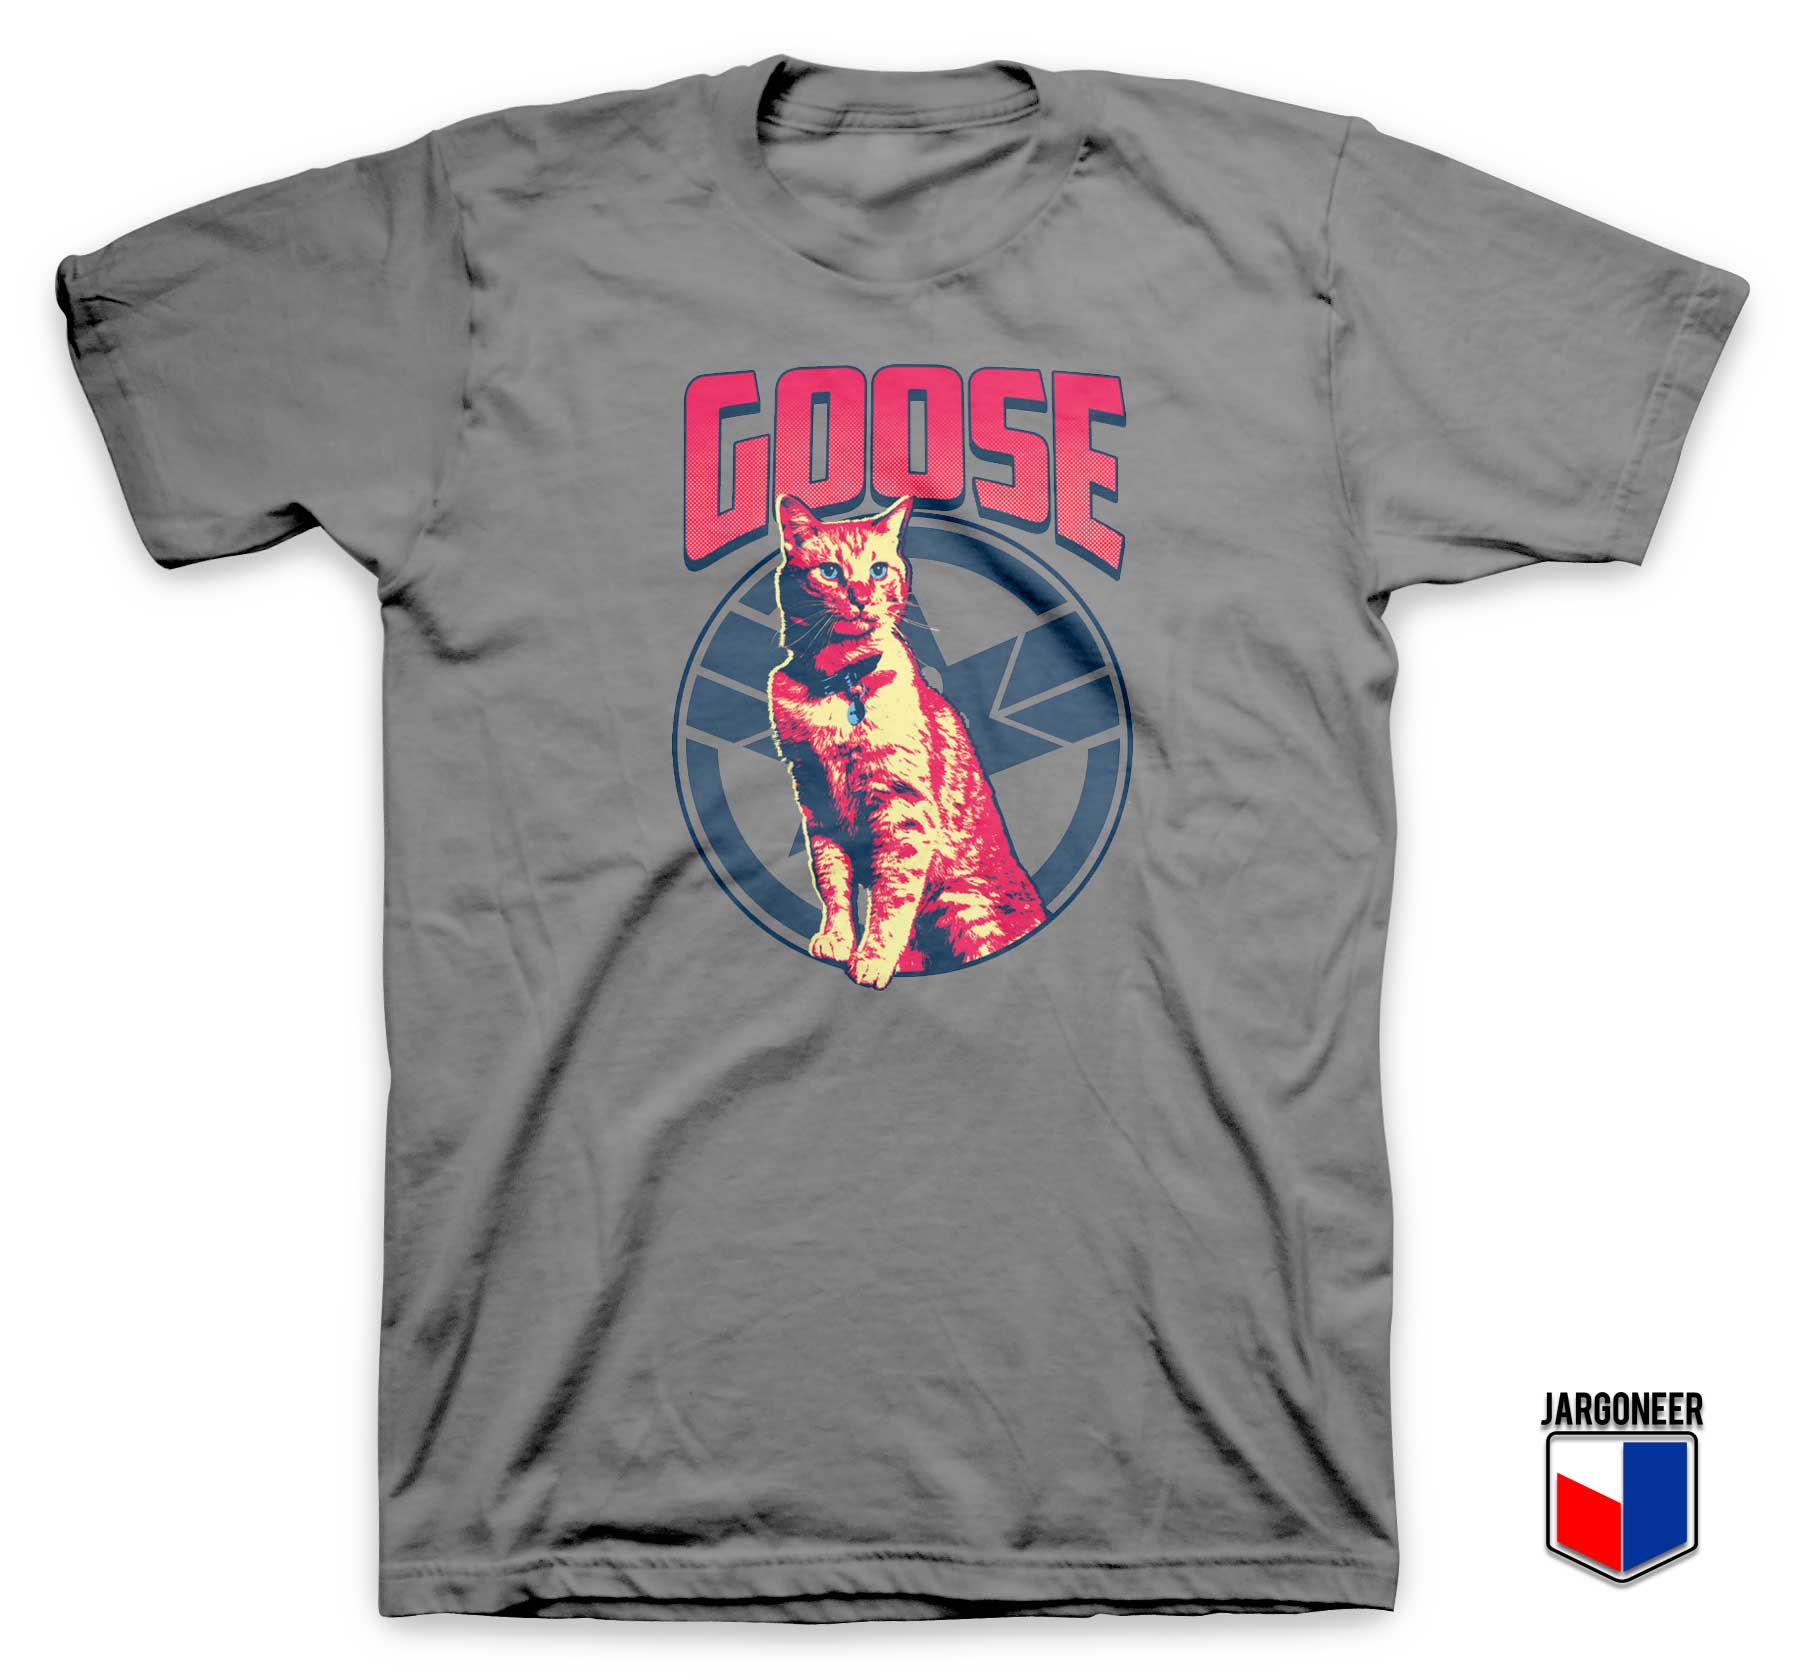 Goose To The Rescue T shirt - Shop Unique Graphic Cool Shirt Designs